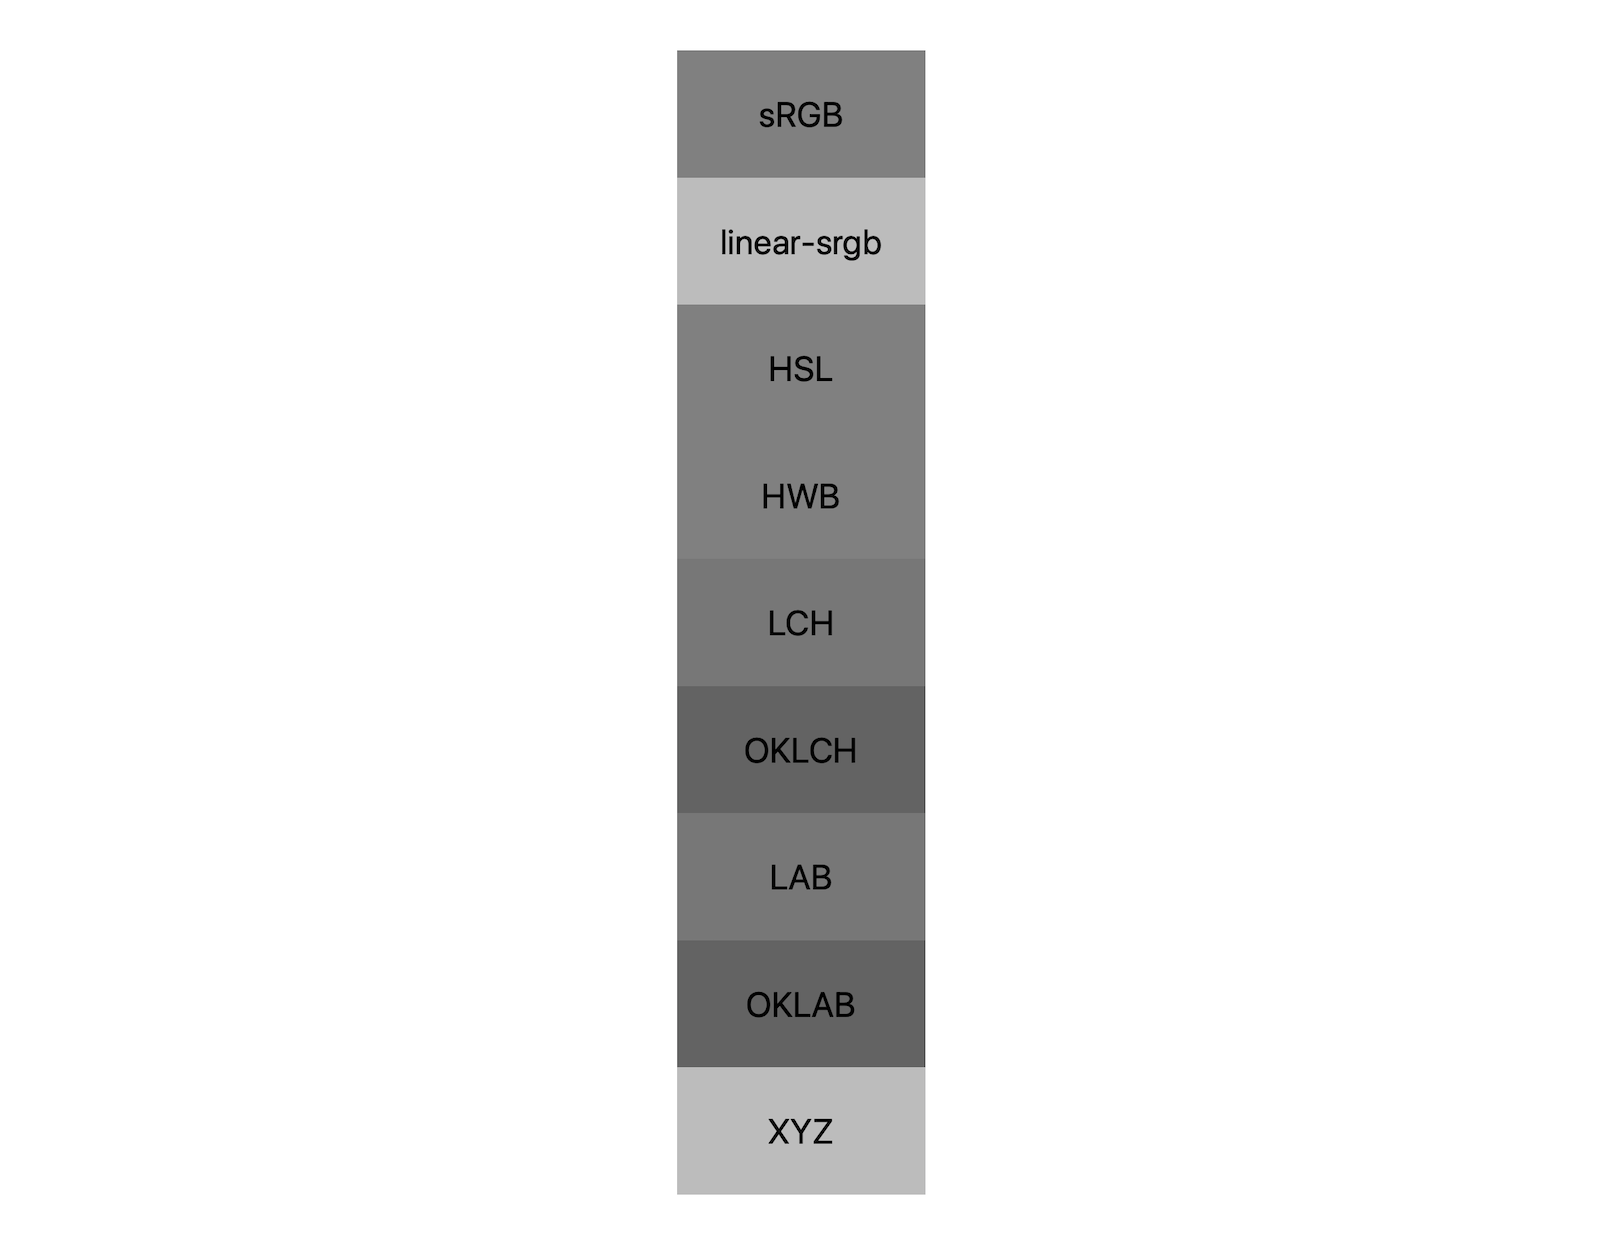 7 個色域 (srgb、Linear-srgb、lch、oklch、lab、oklab、xyz) 各有 7 種色彩空間，分別顯示黑白兩色的混合結果。畫面會顯示大約 5 種顏色，表明每個顏色空間甚至會混成不同的灰色。